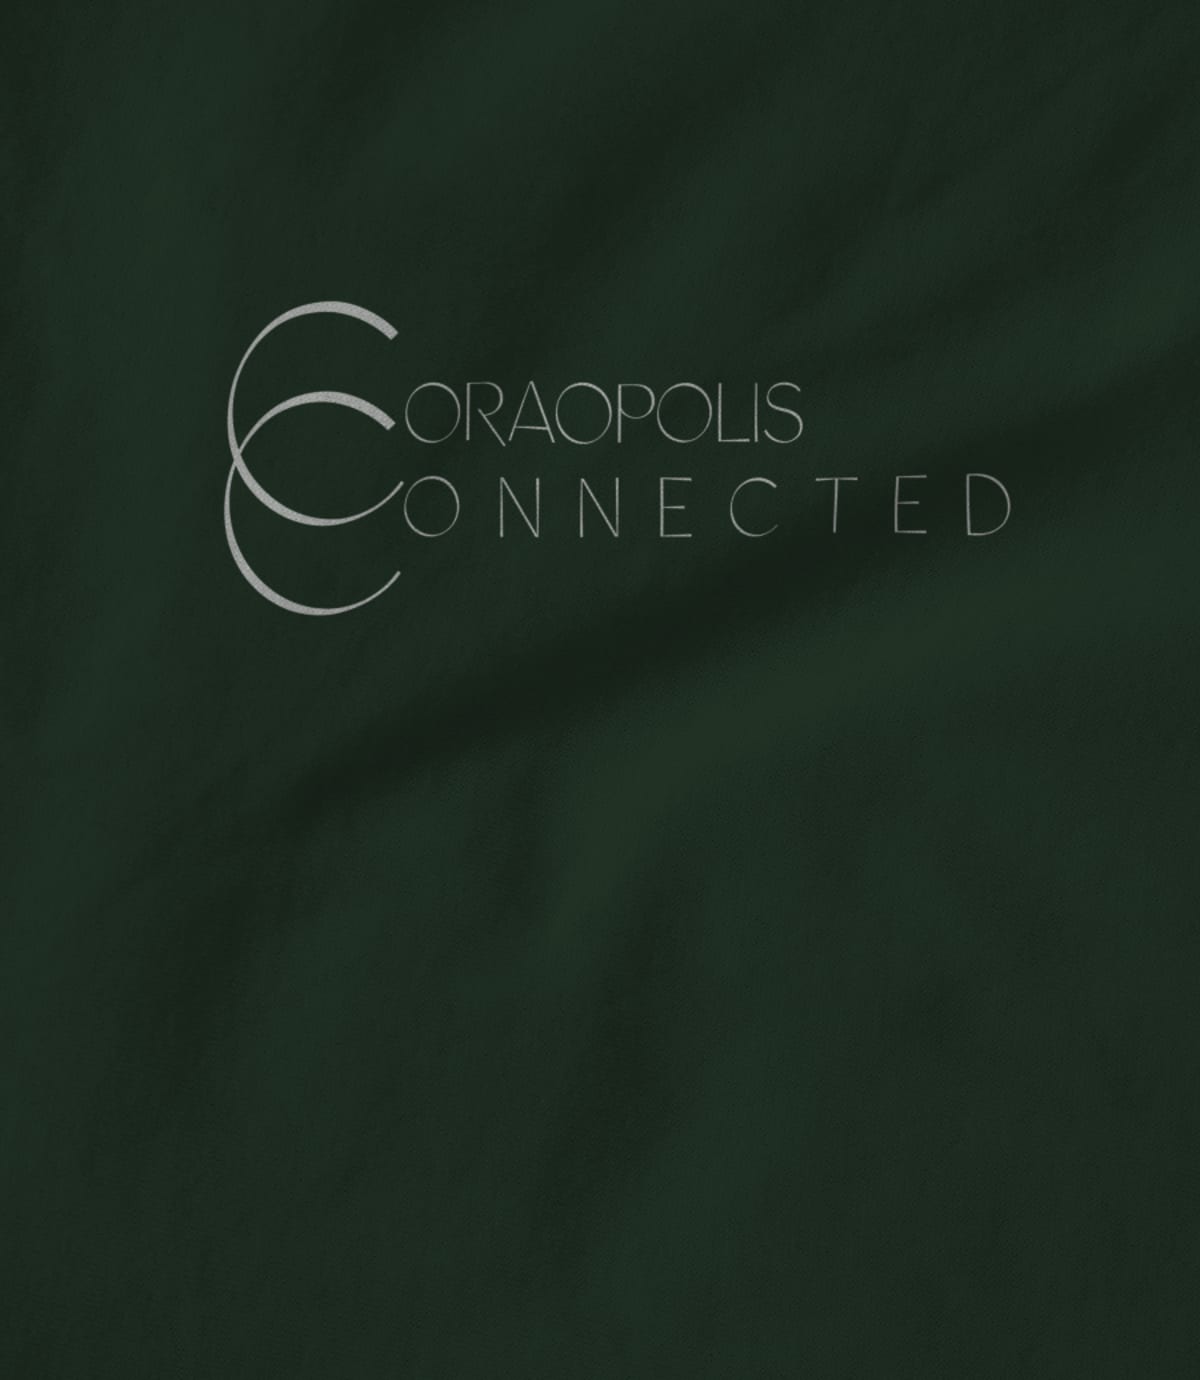 Coraopolis Connected